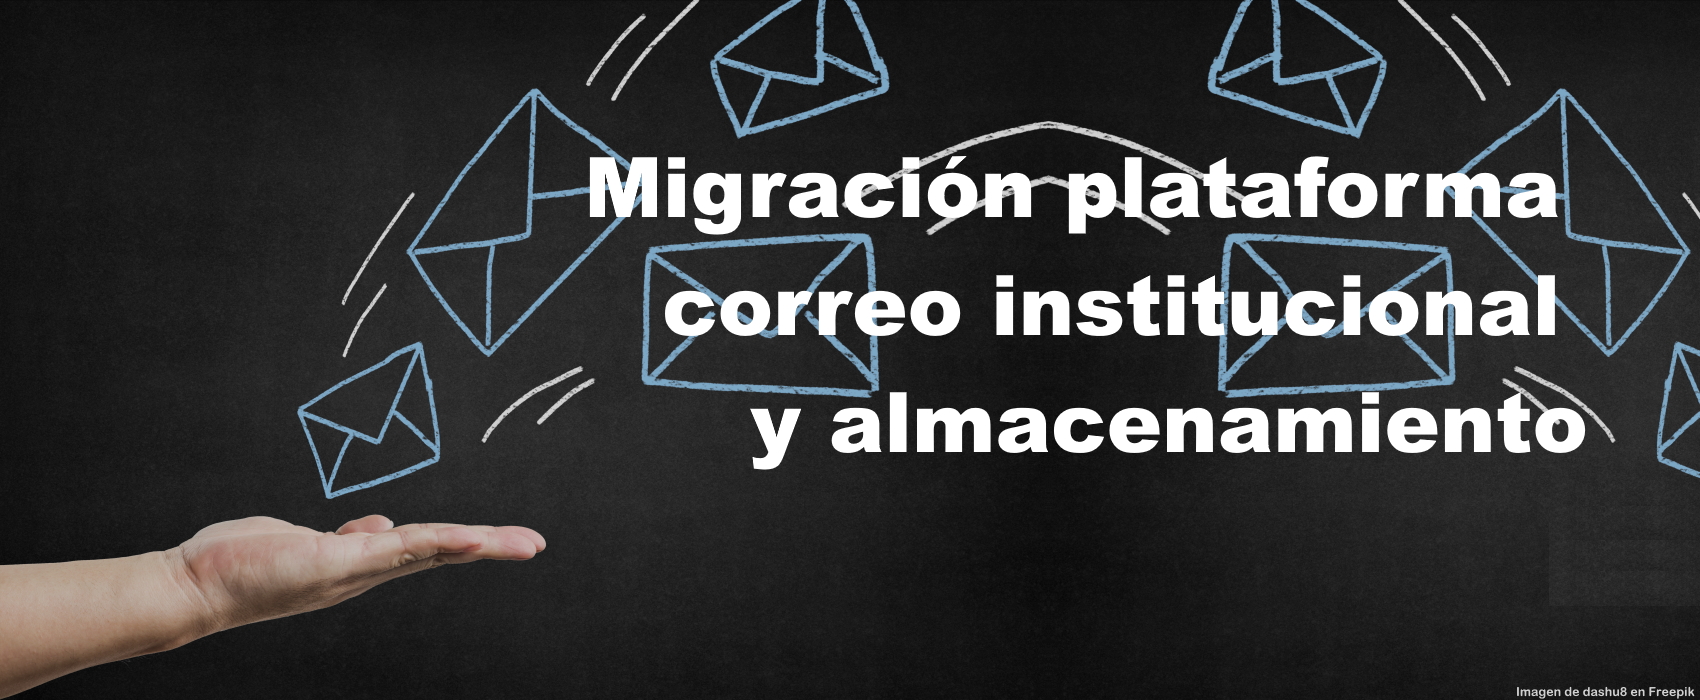 Migración plataforma correo institucional